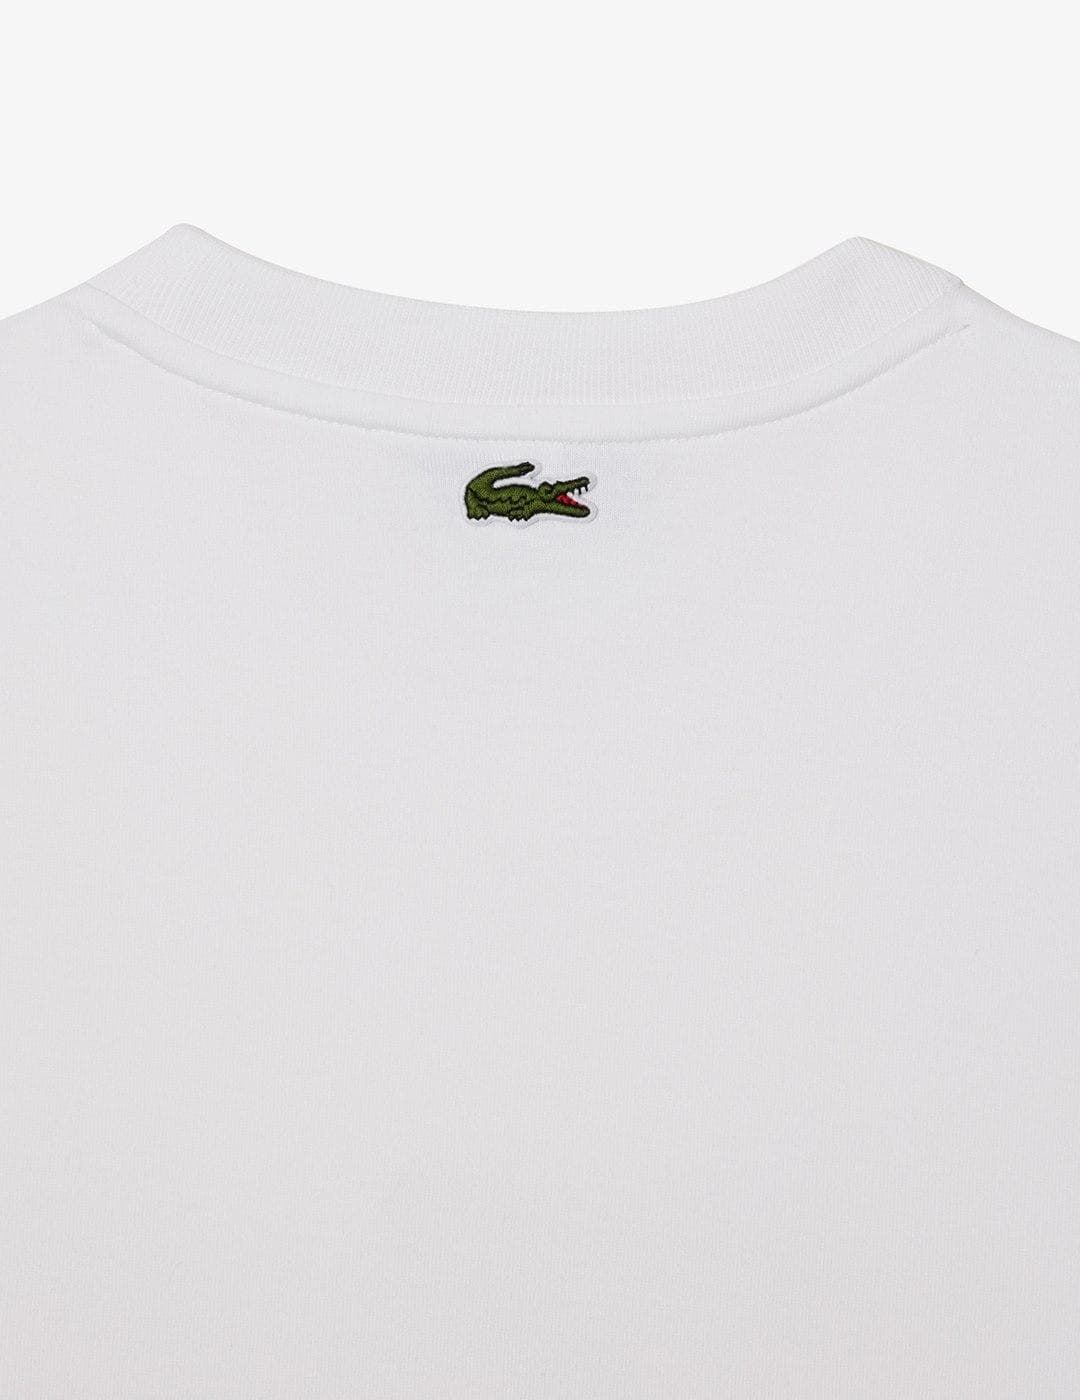 Camiseta Lacoste TH2104 00 001 blanc - Imagen 3